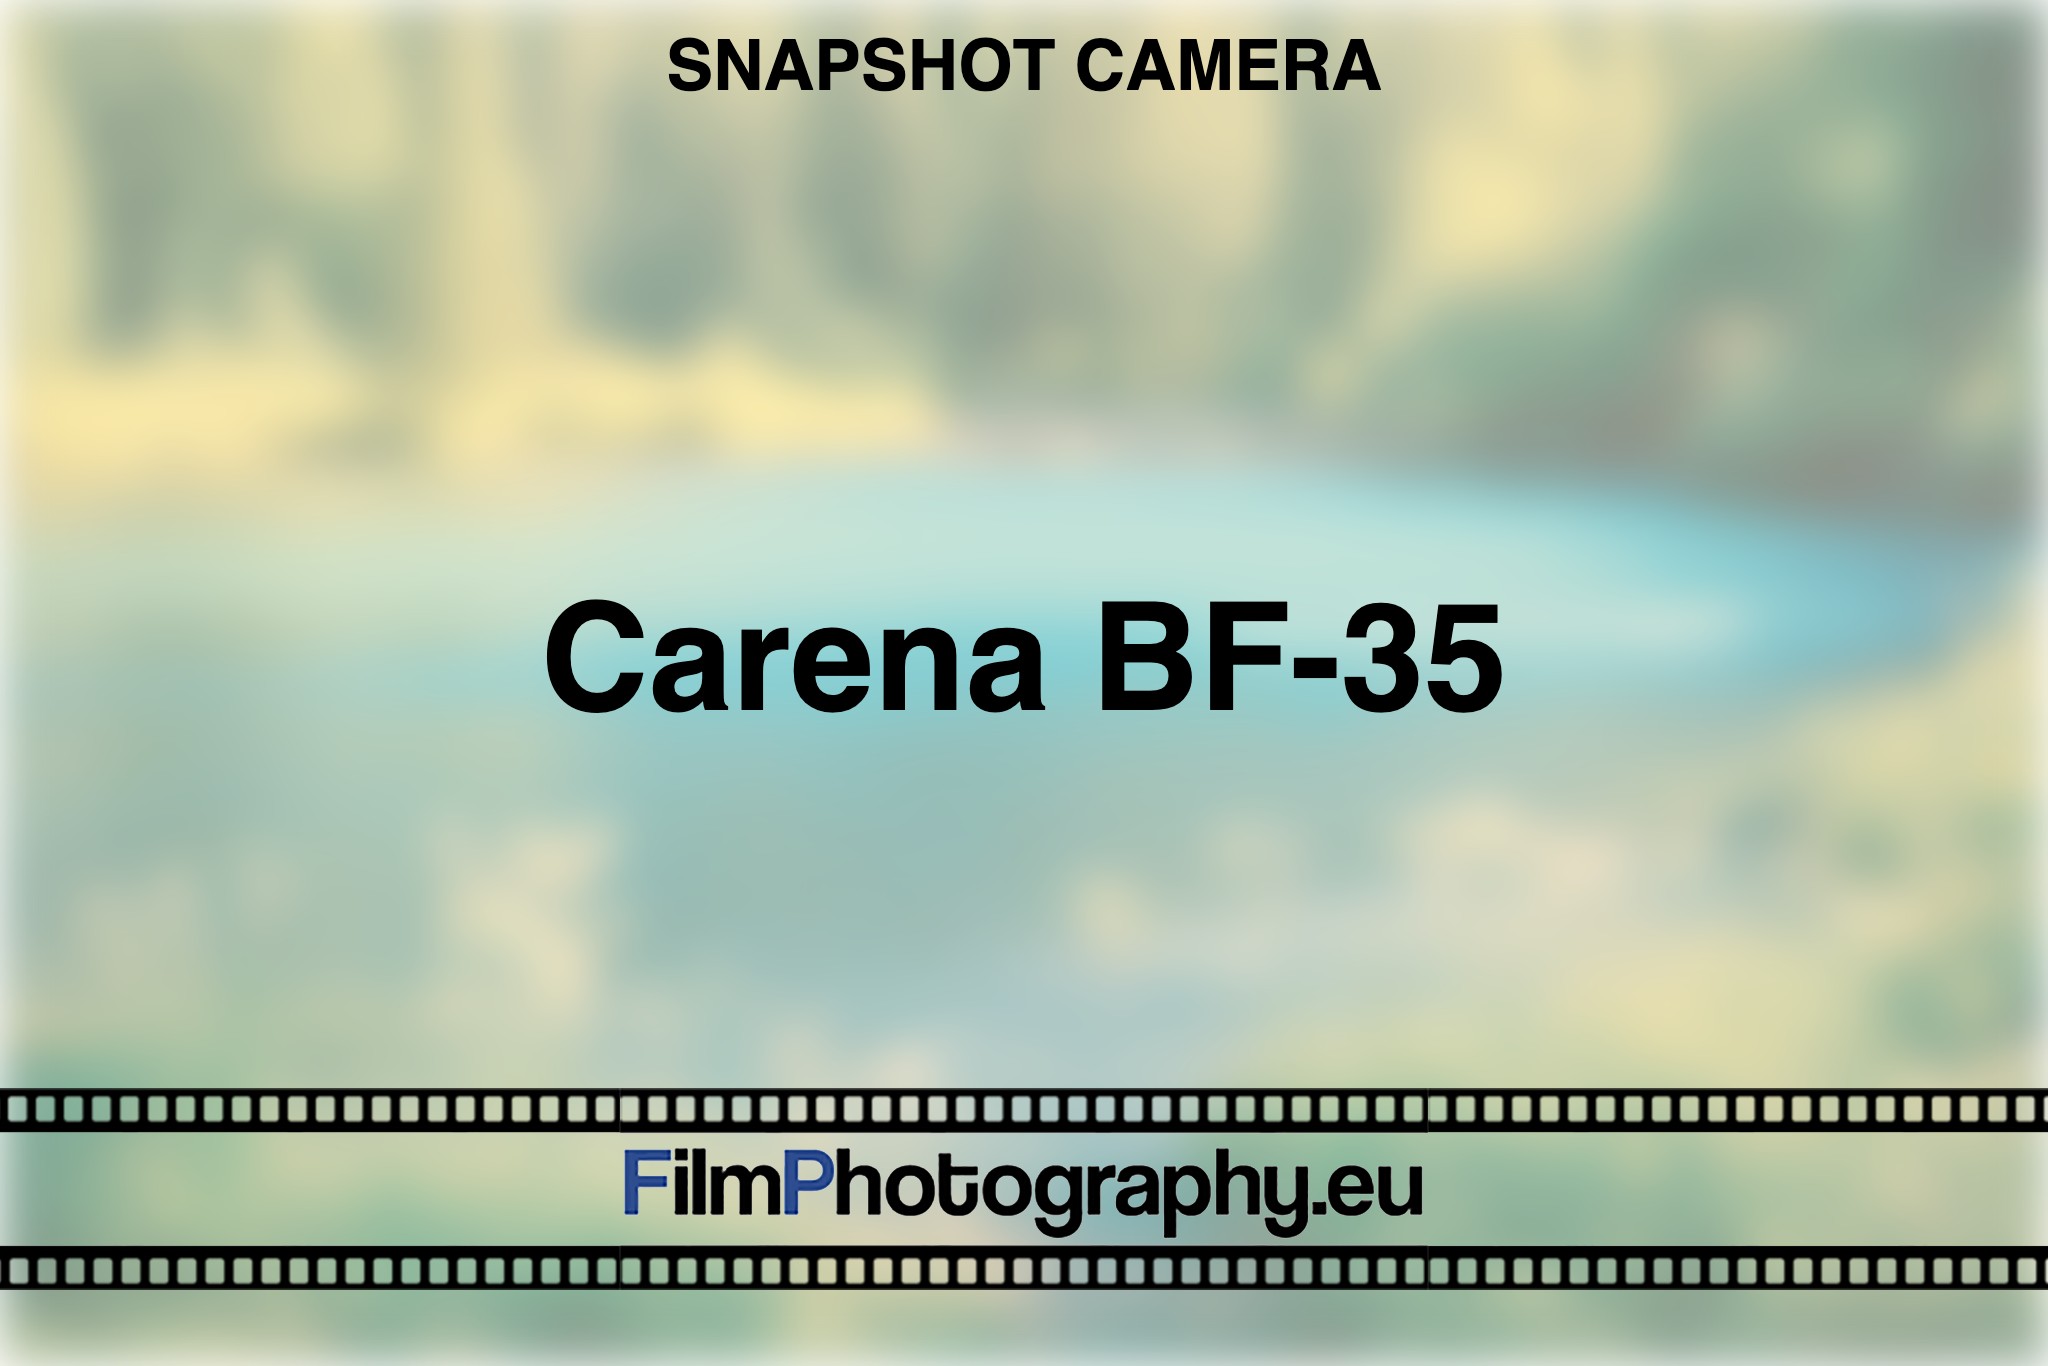 carena-bf-35-snapshot-camera-bnv